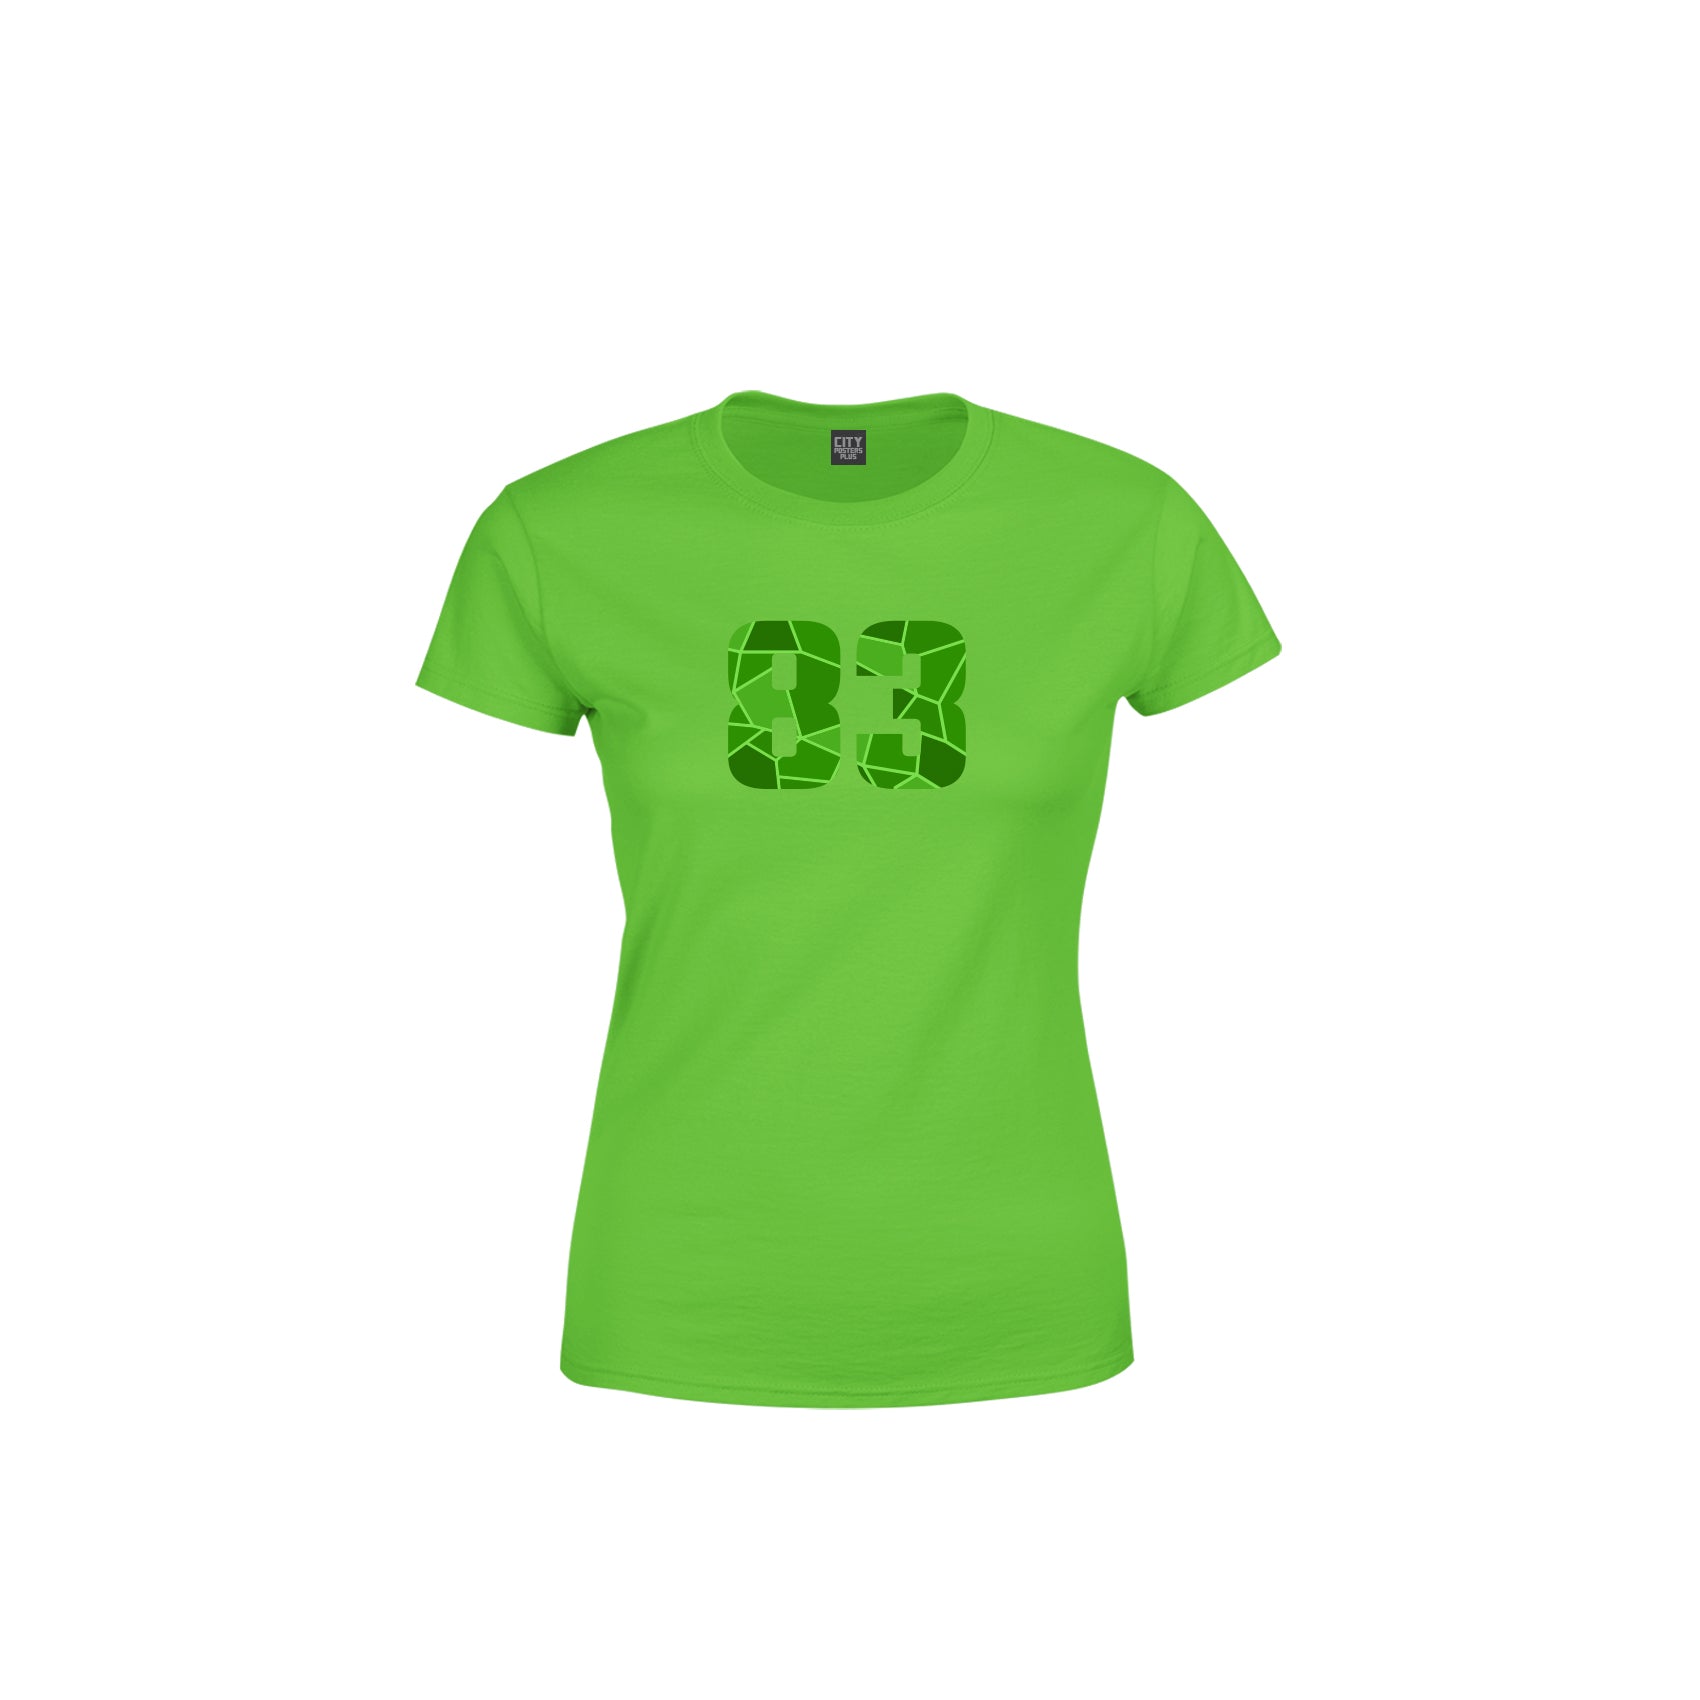 83 Number Women's T-Shirt (Liril Green)